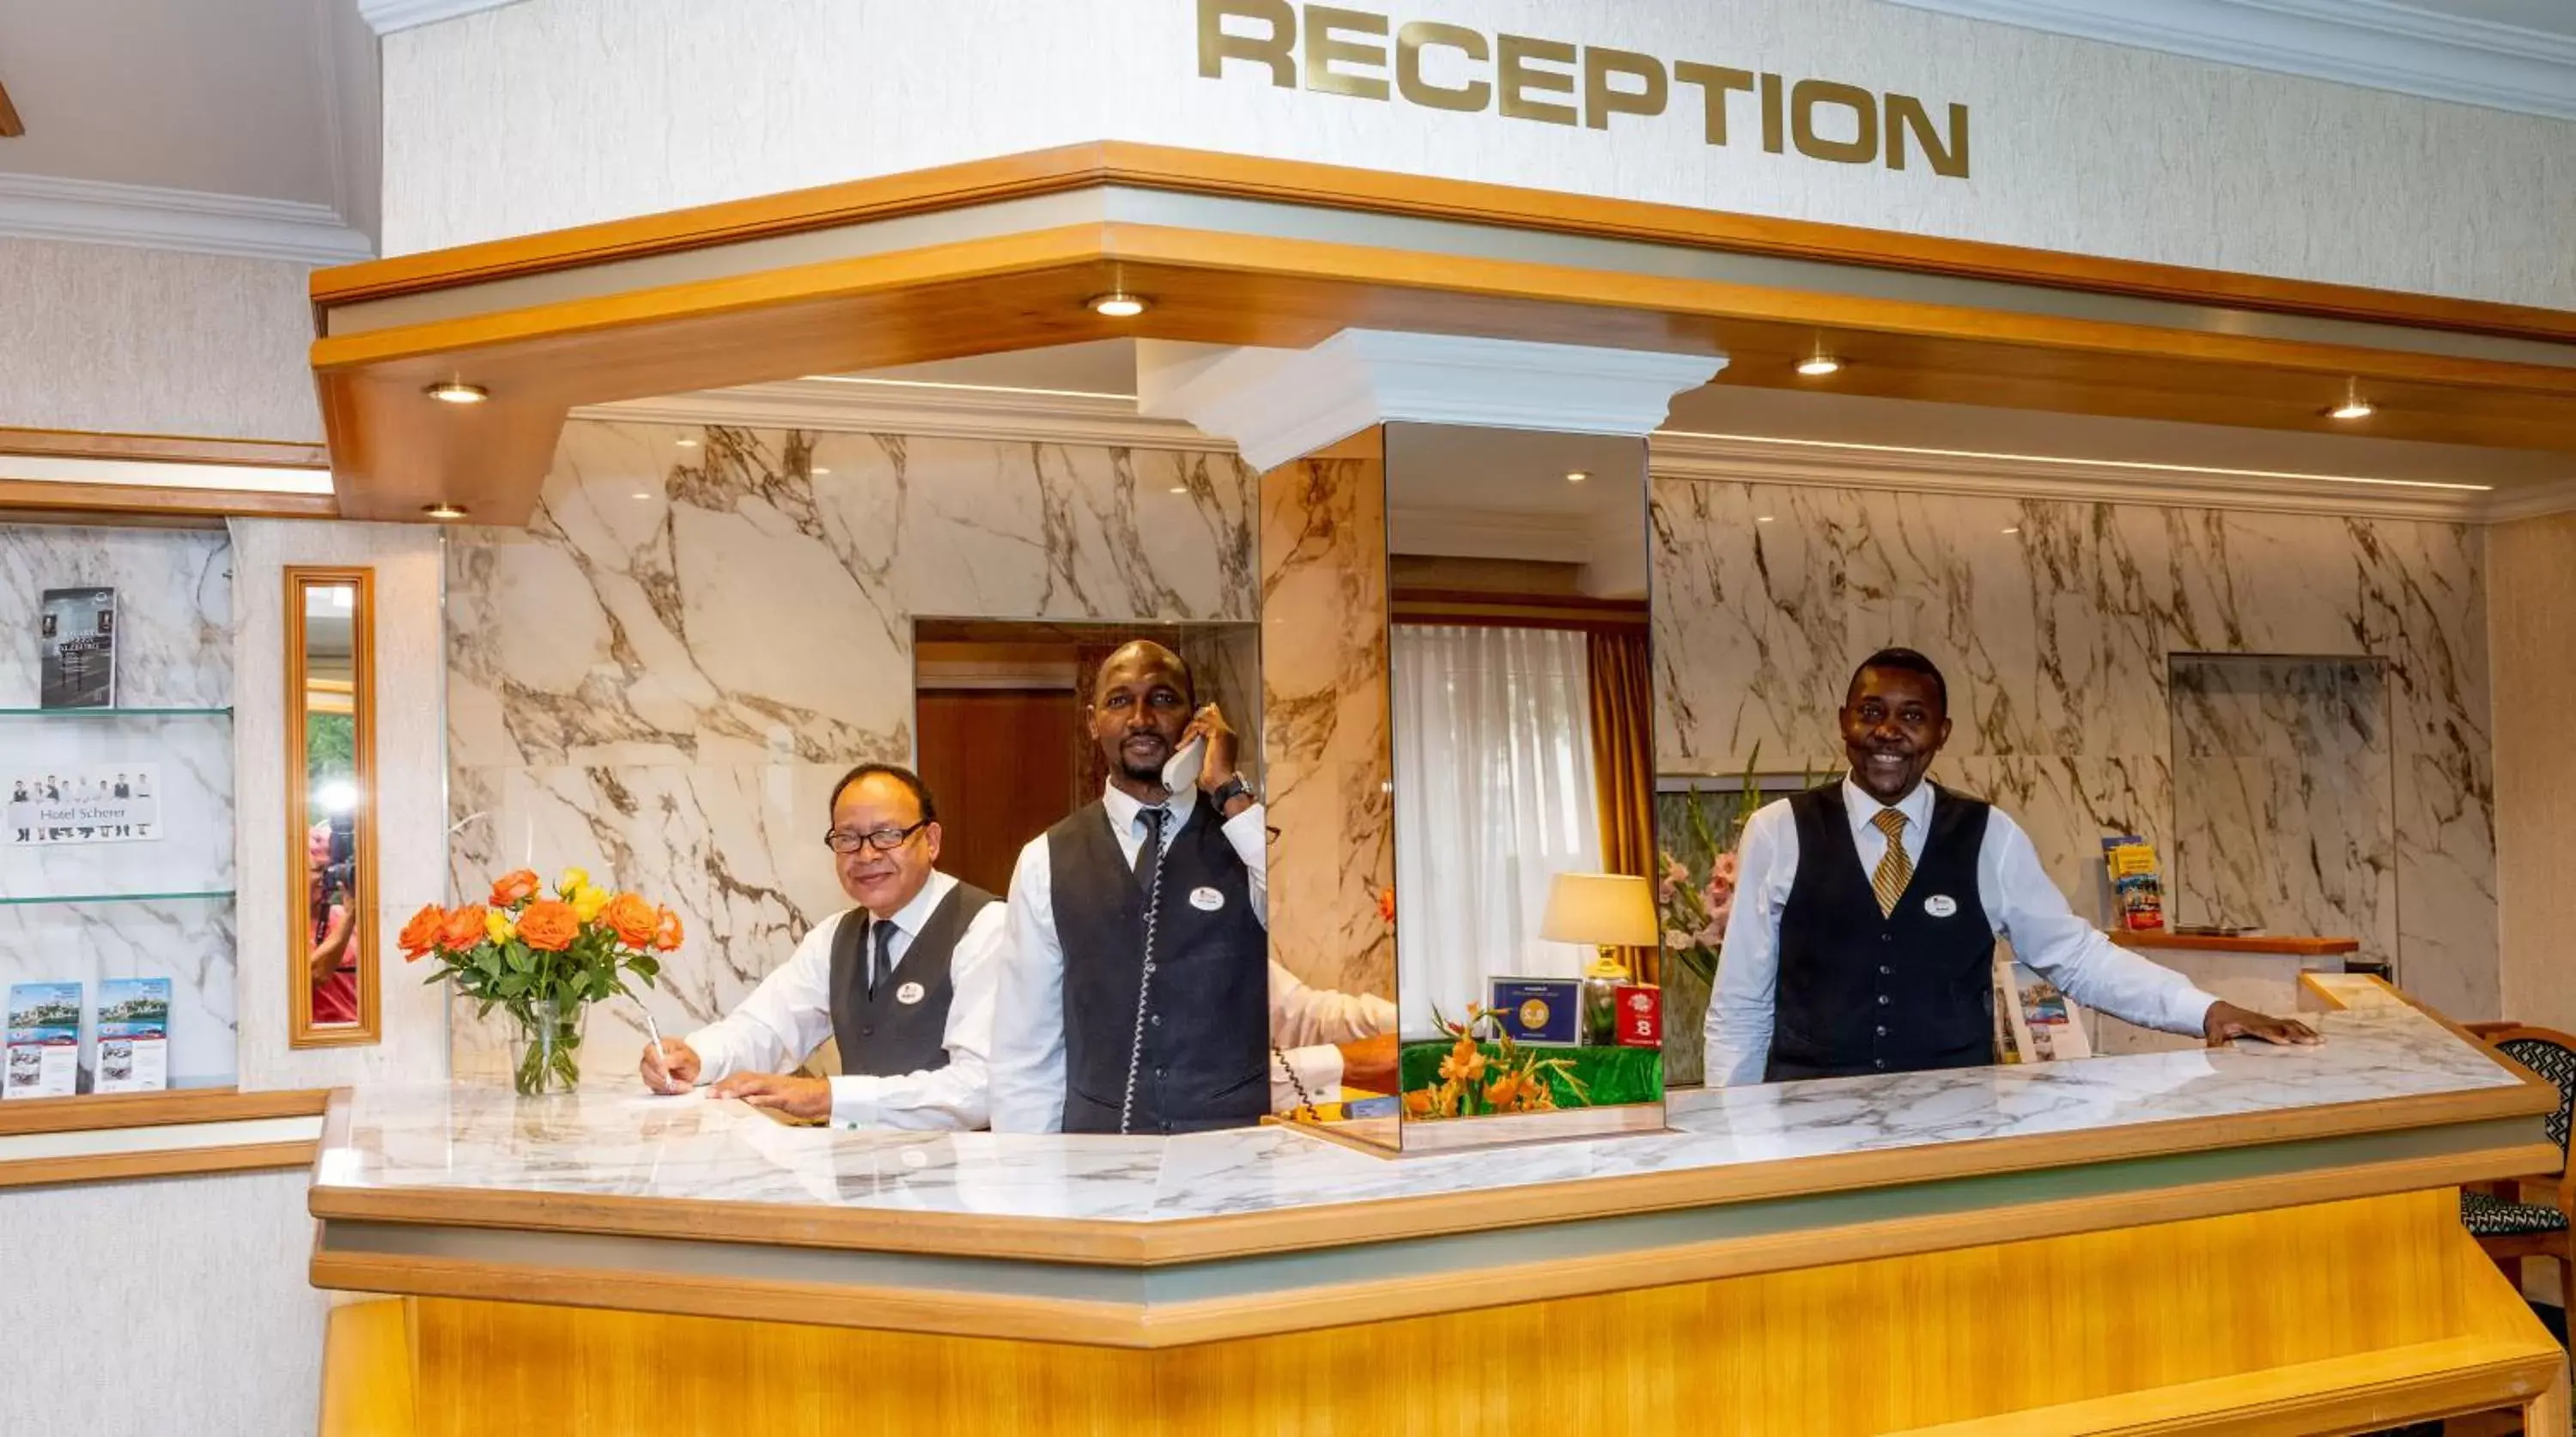 Lobby/Reception in Hotel Scherer